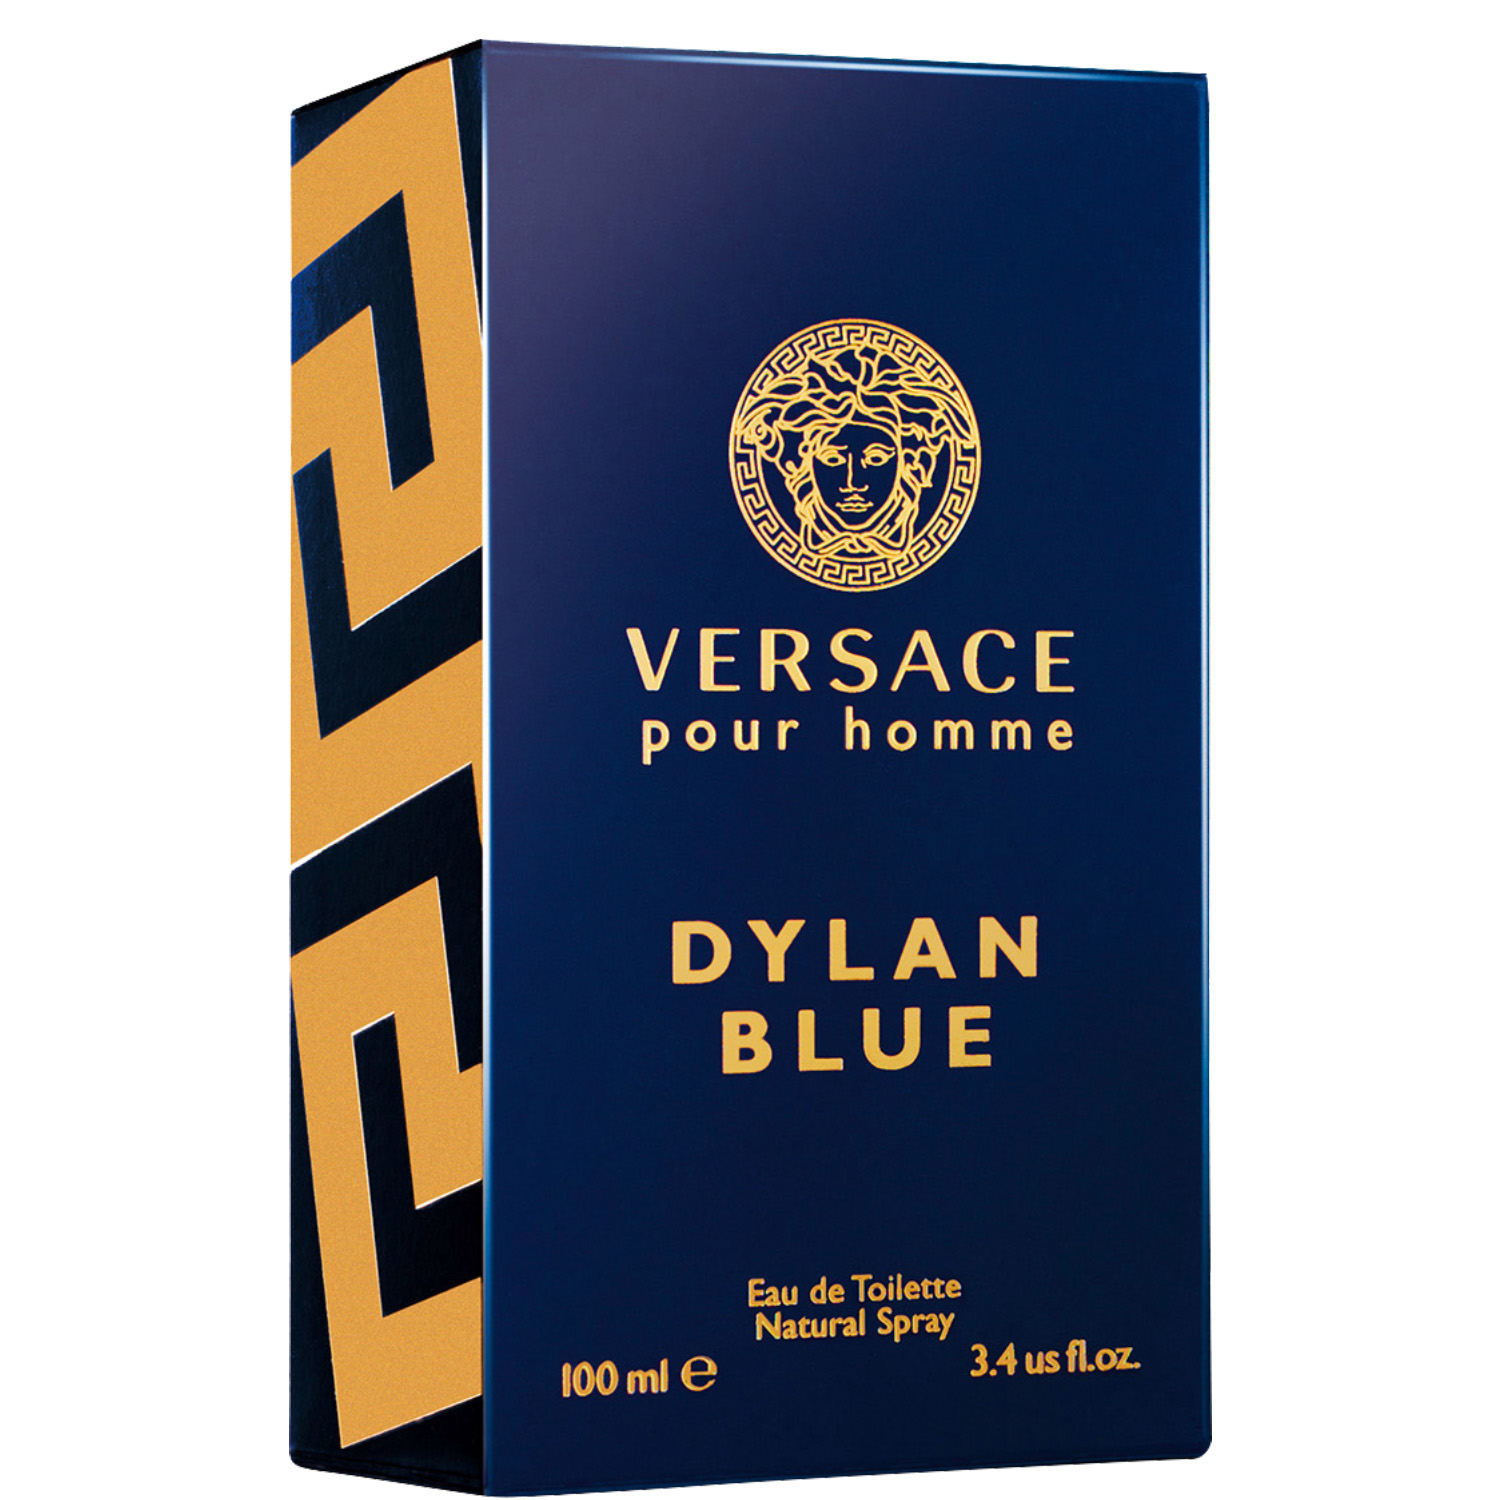 Versace Dylan Blue Eau de Toilette 100ml